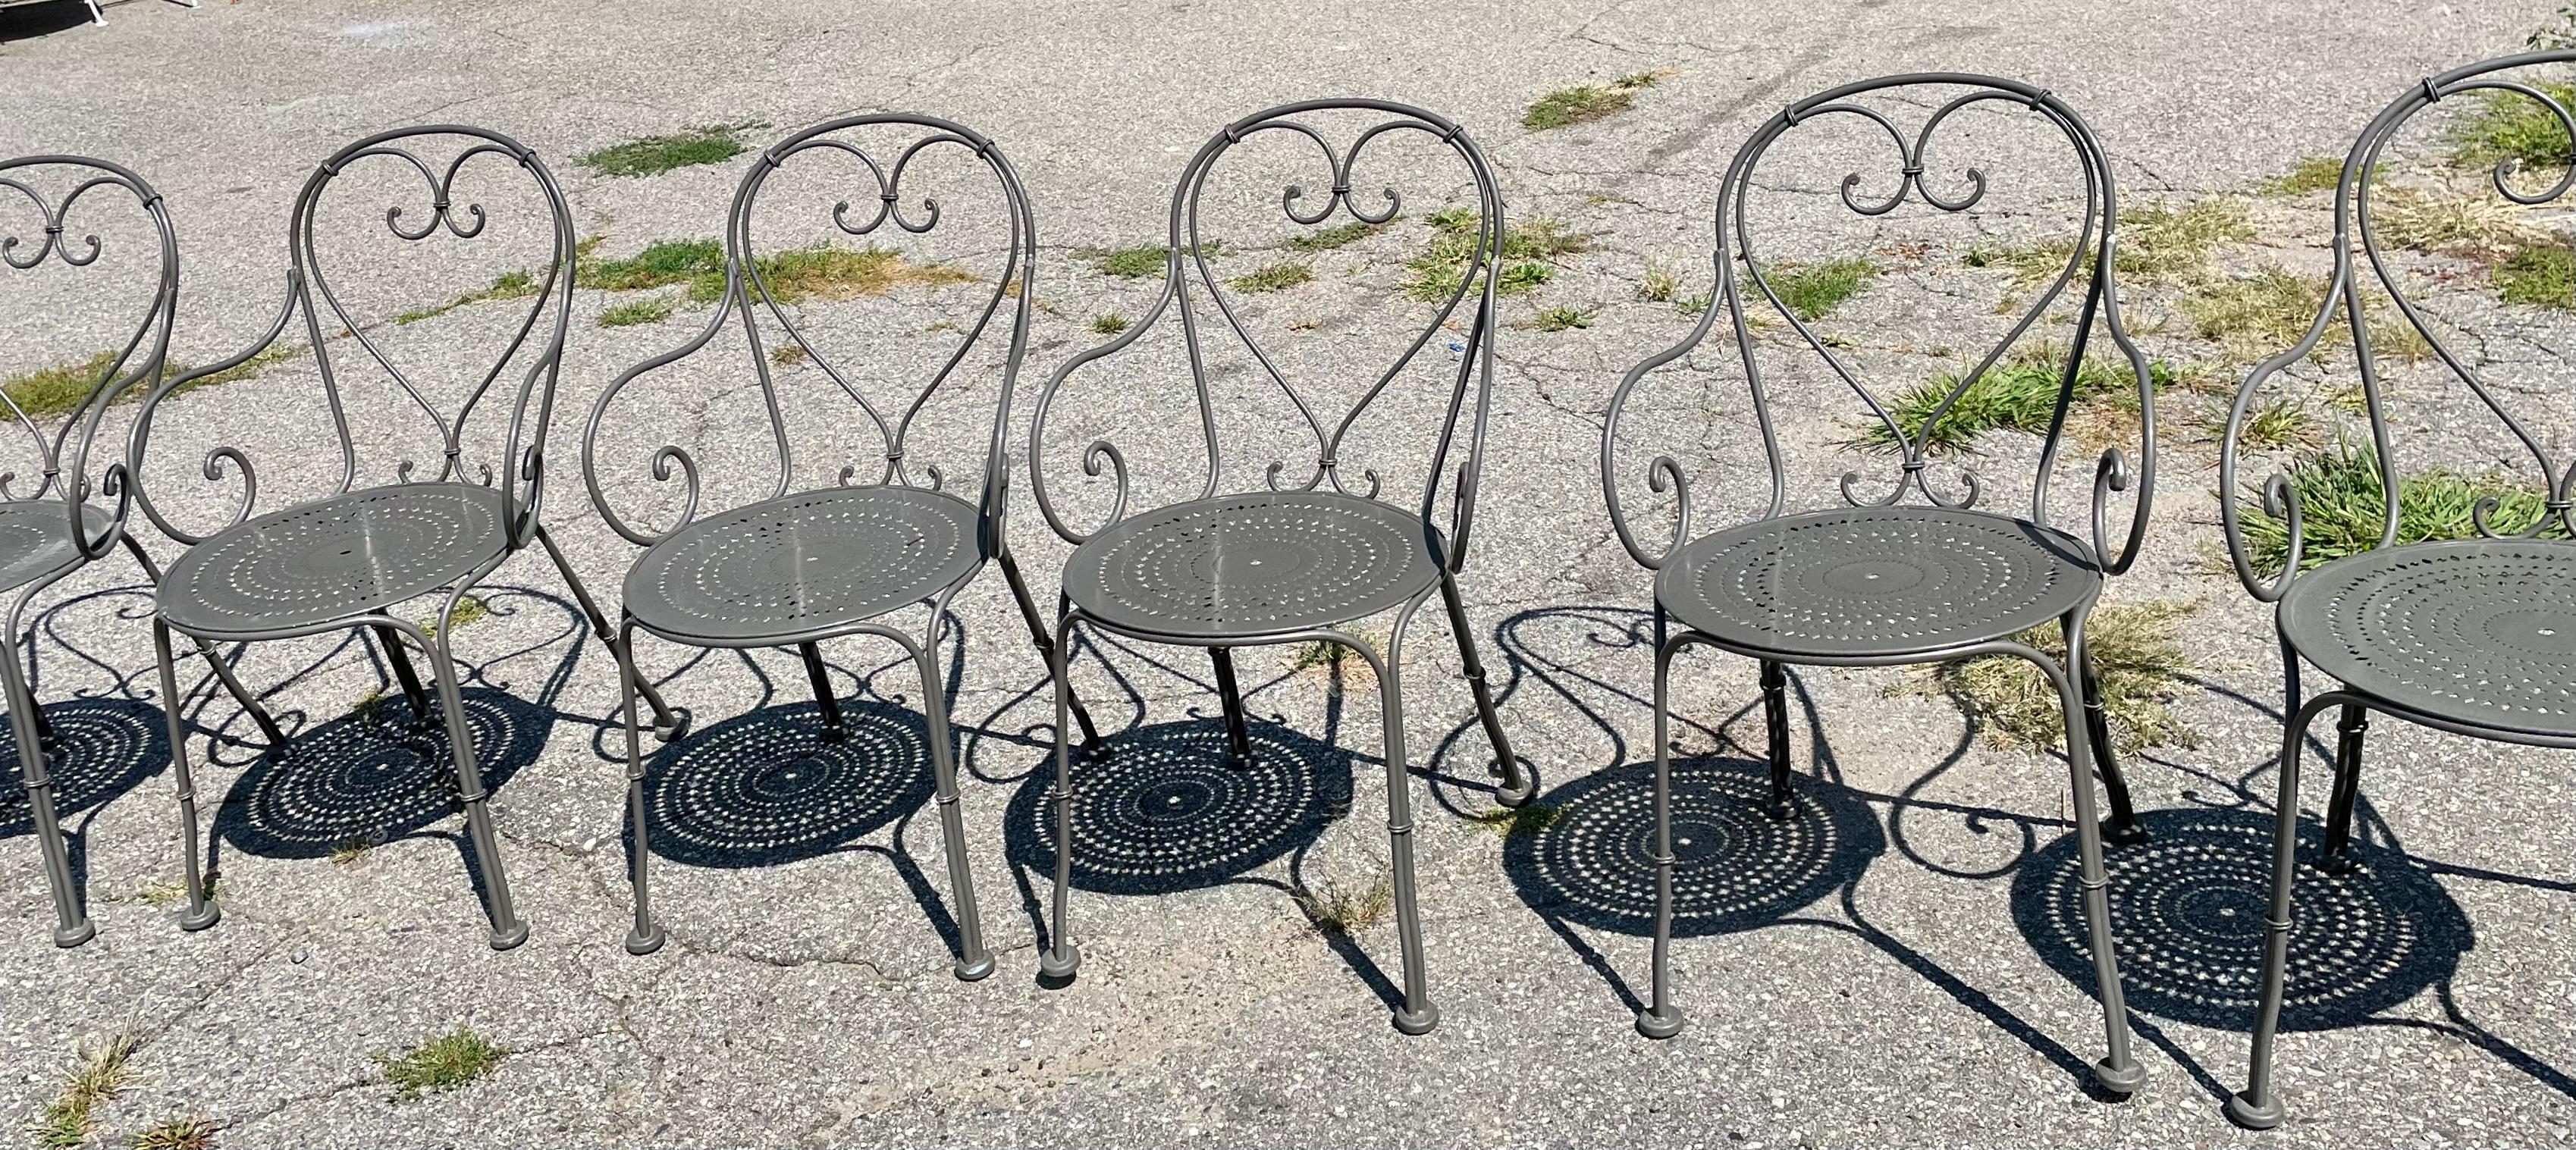 Woodard Stühle A Satz von 10

Französische Cafe-Stühle aus schwerem Schmiedeeisen sind ab sofort erhältlich und können sofort versandt werden. Diese Stühle haben eine herzförmige Rückenlehne mit geschwungenen Armlehnen und einen großzügigen